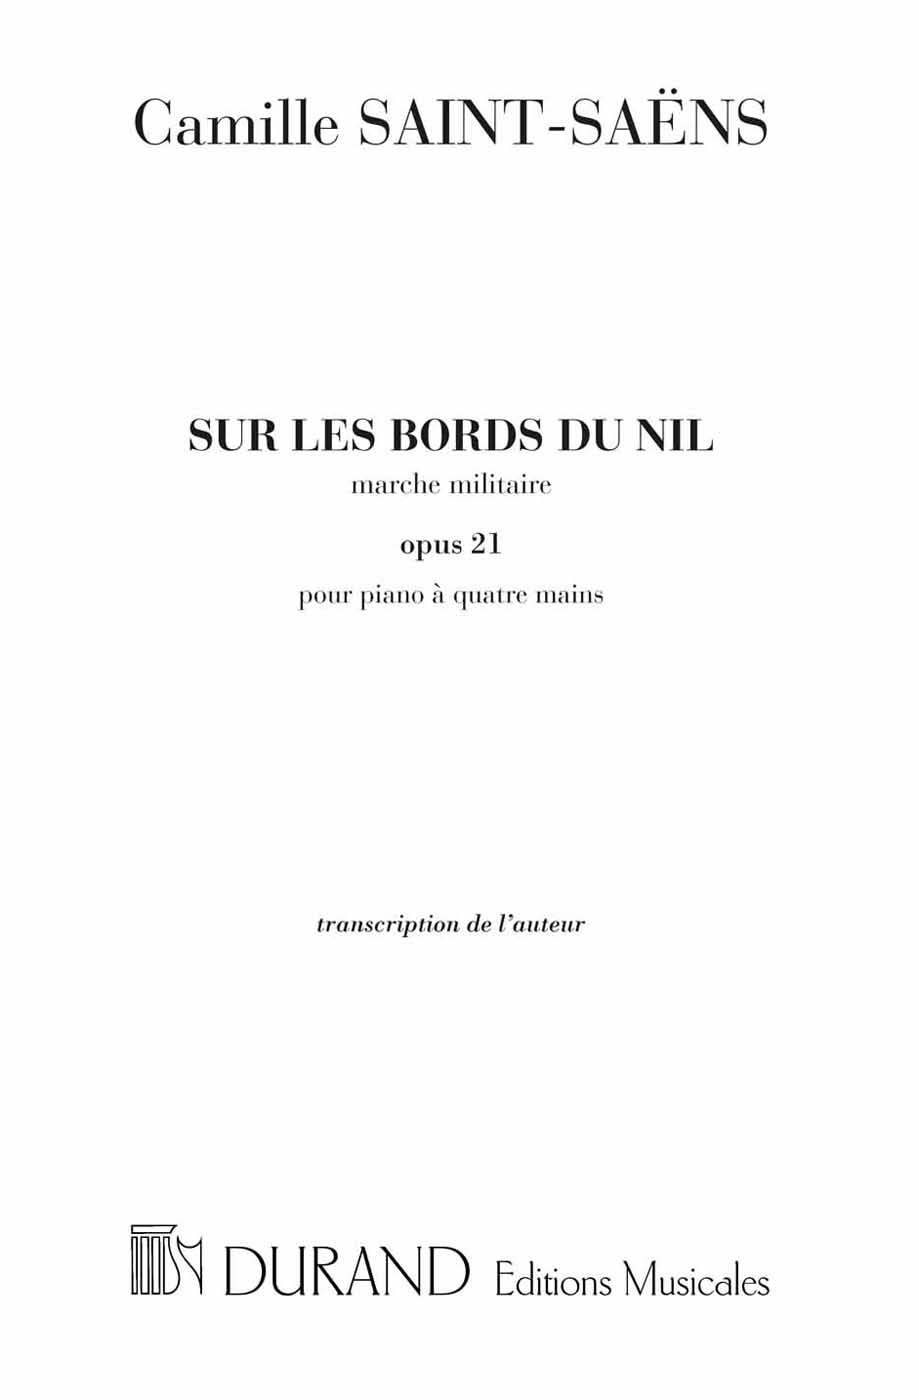 Camille Saint-Saëns: Sur Les Bords Du Nil Marche Militaire opus 21: Piano 4